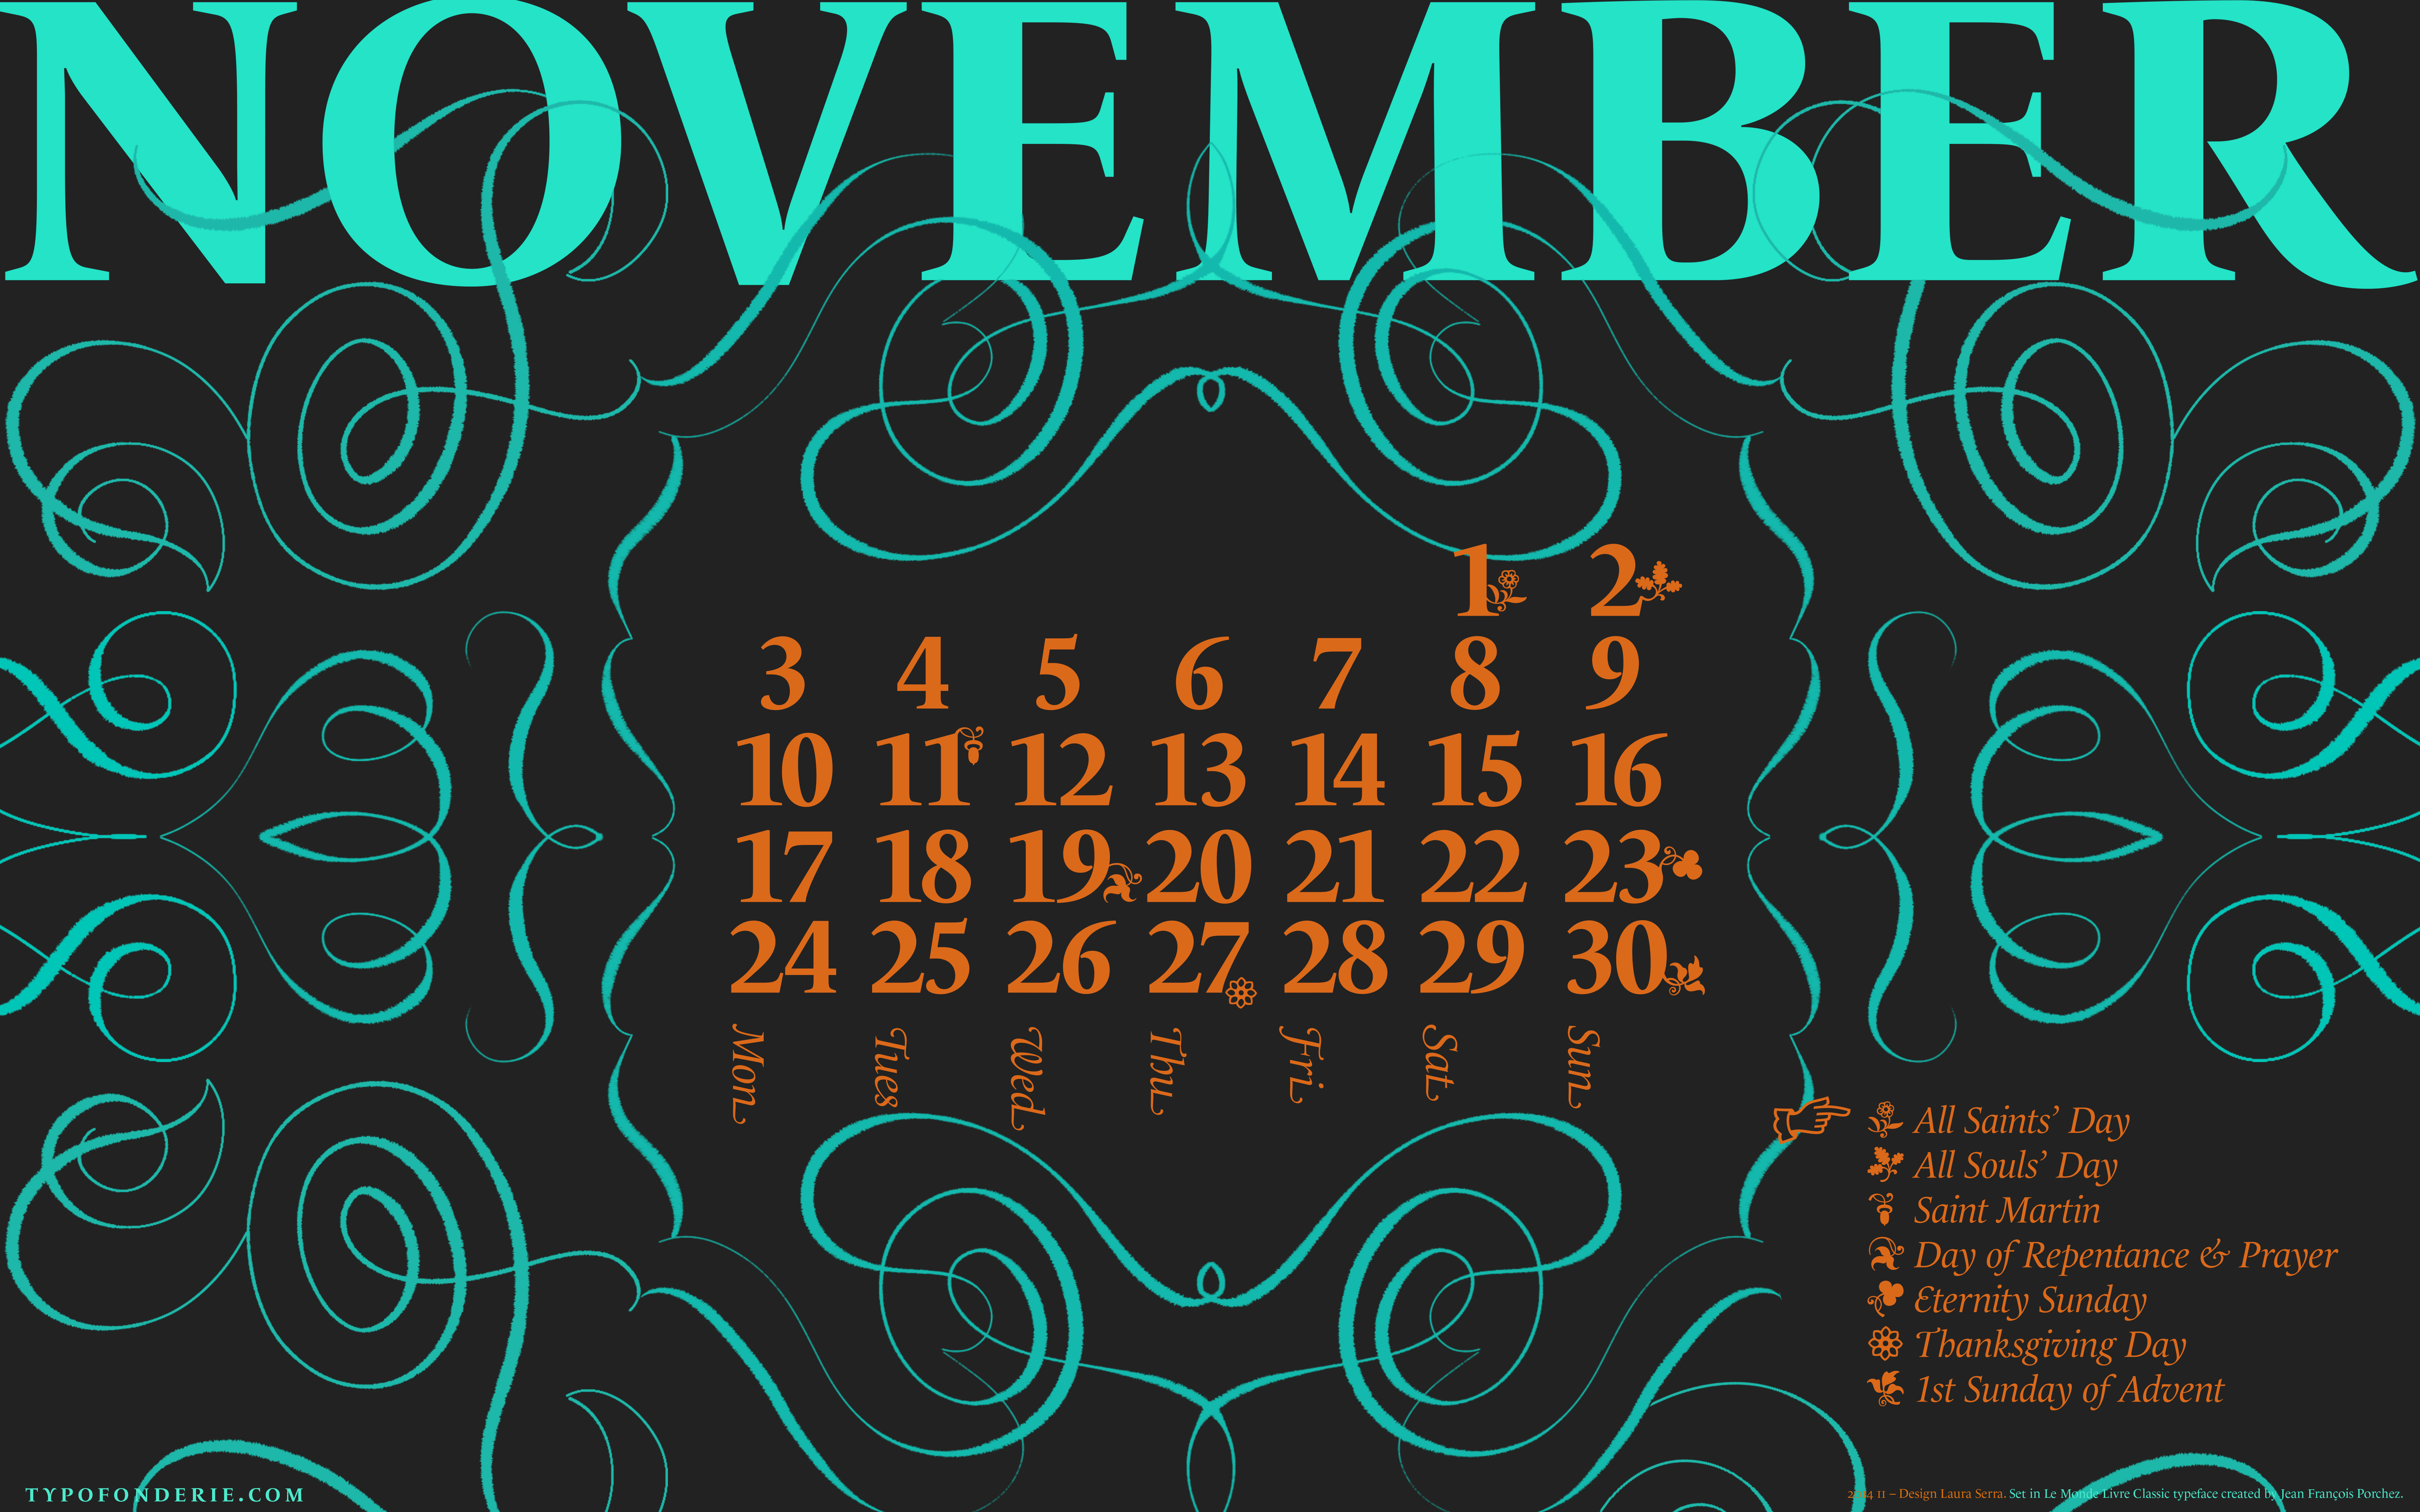 A wallpaper calendar November 2014 featuring Le Monde Livre ...